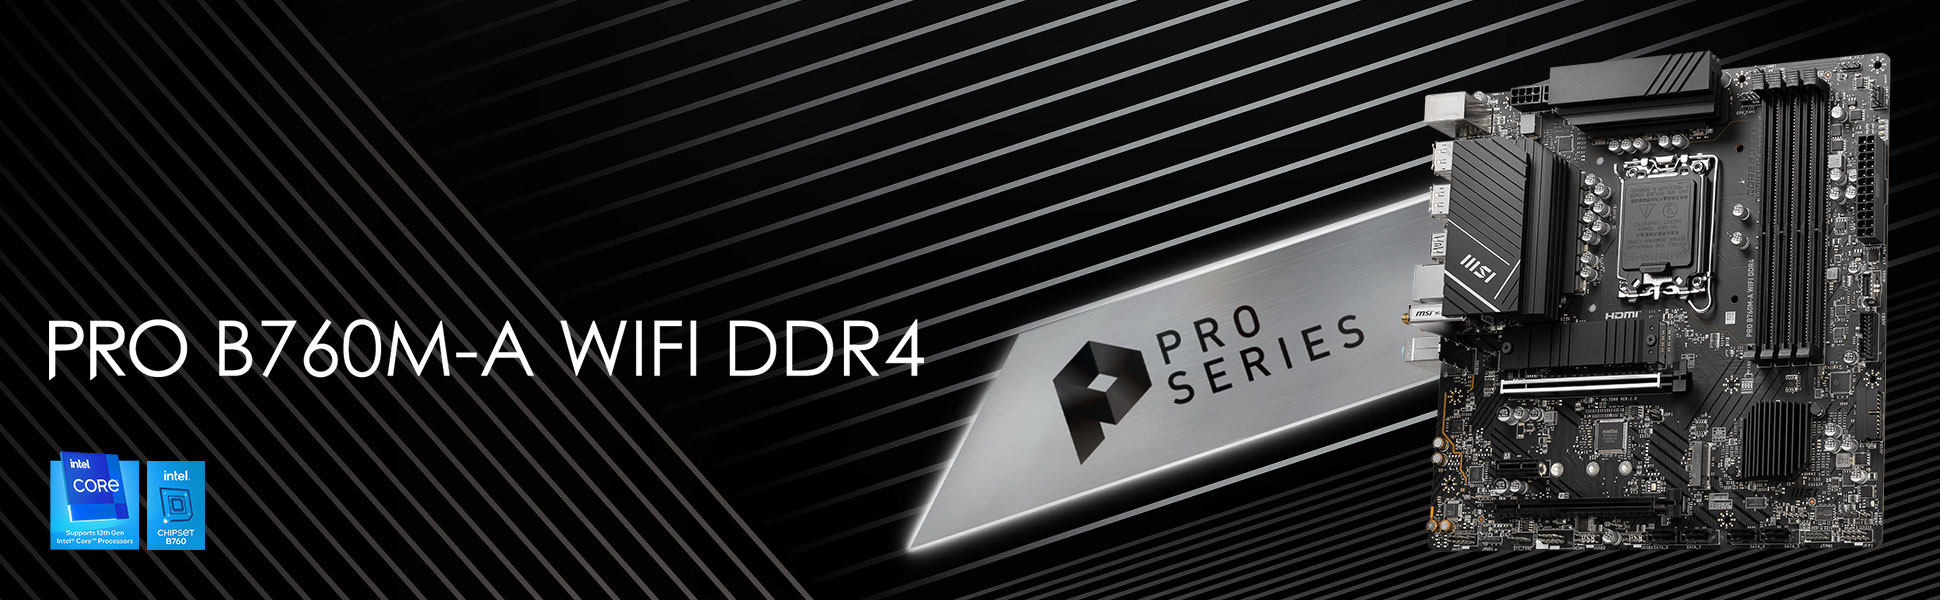 PRO B760M-A WIFI DDR4 Motherboard